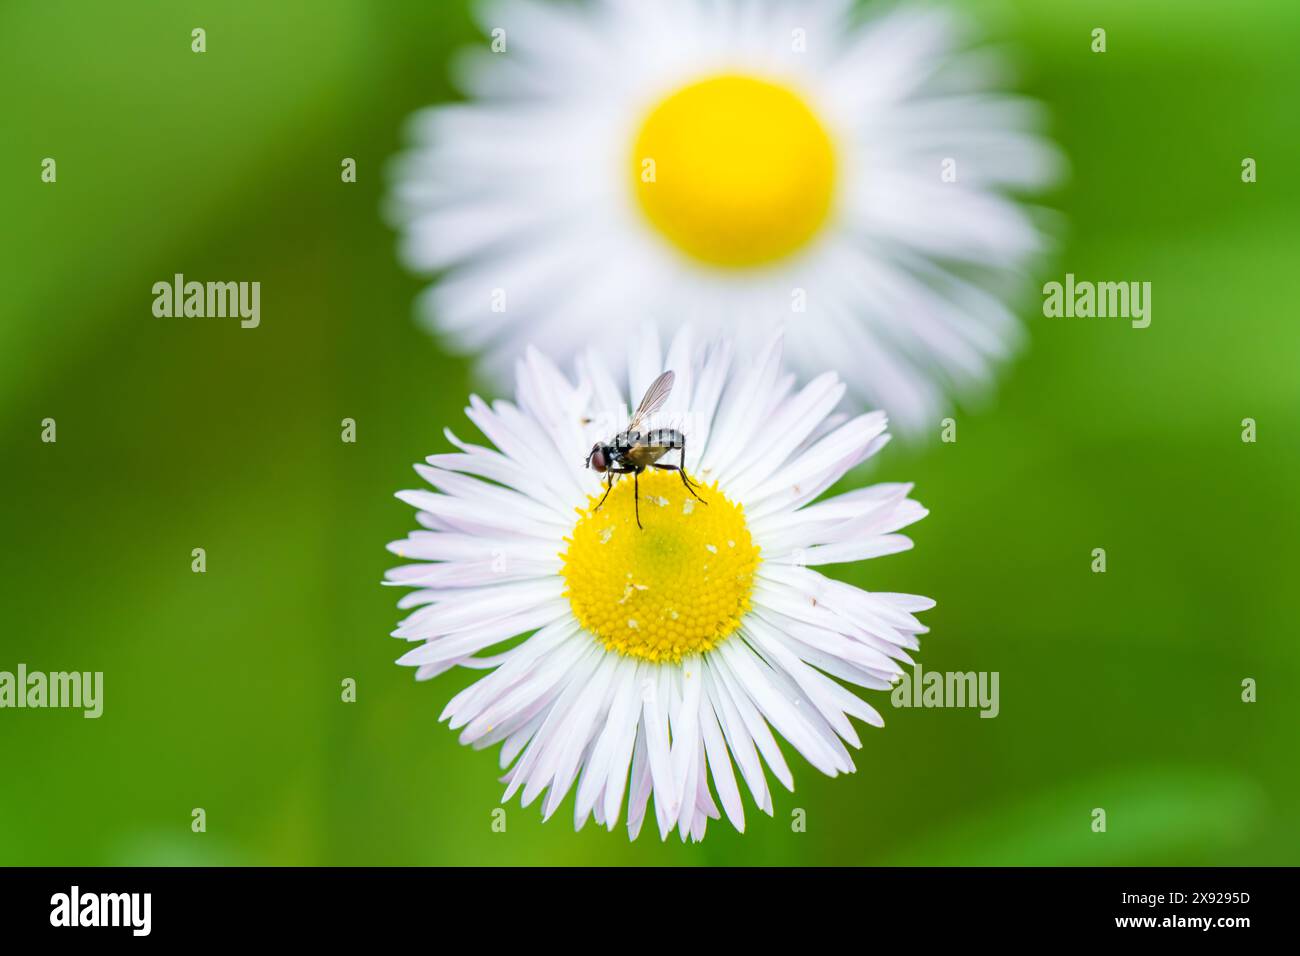 Une petite mouche se perche délicatement sur une fleur blanche au centre jaune vif, entourée de délicats pétales. La scène présente un pollinisateur int Banque D'Images